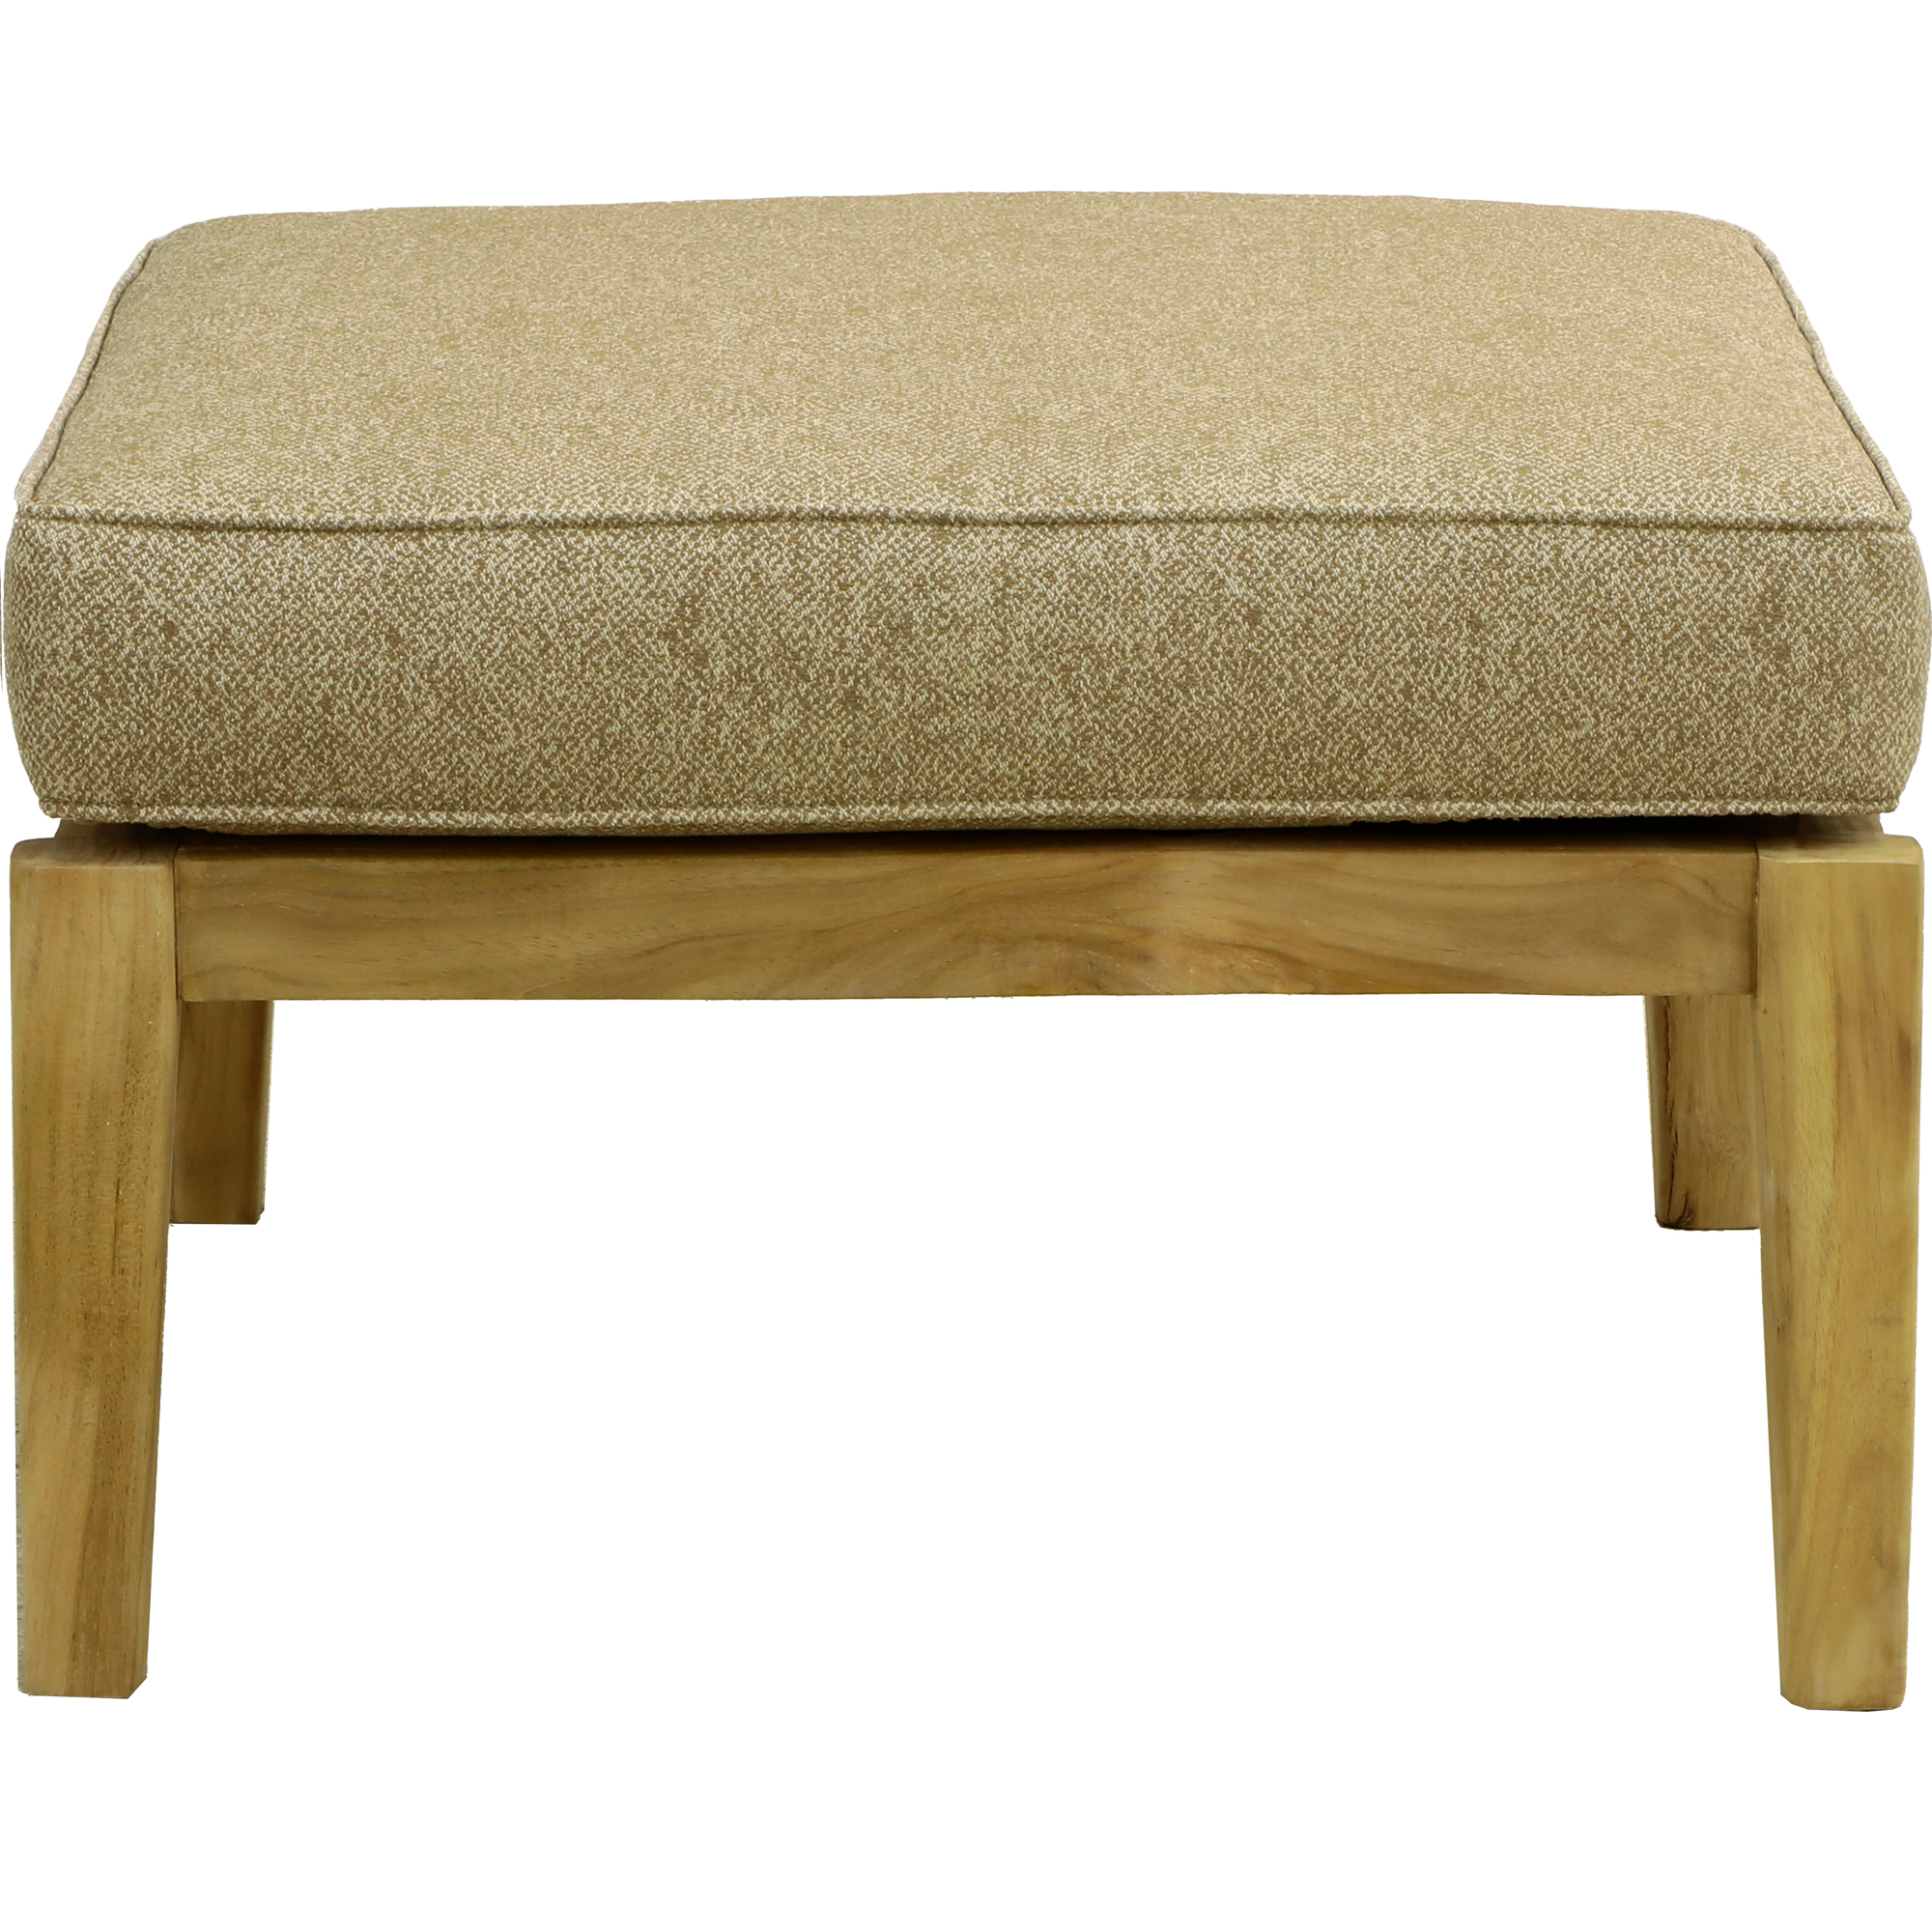 Комплект мебели Jepara Porto Cervo l 6 предметов, цвет коричневый, размер 82х210х85 - фото 10